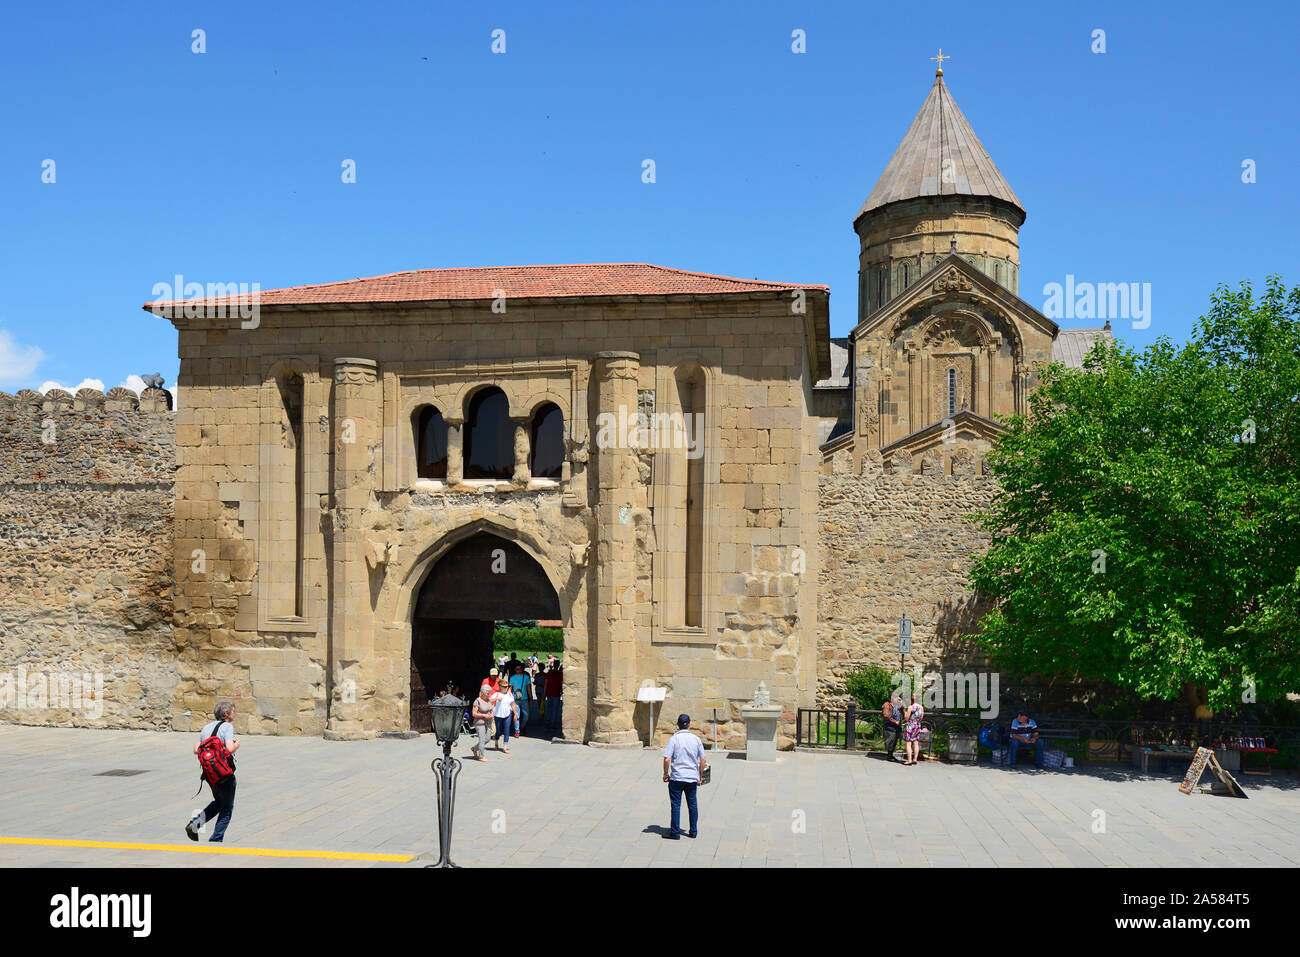 Porte principale de la cathédrale de Svetitskhoveli (Cathédrale de l'vivant pilier). Site du patrimoine mondial de l'UNESCO, Mtskheta. La Géorgie Banque D'Images